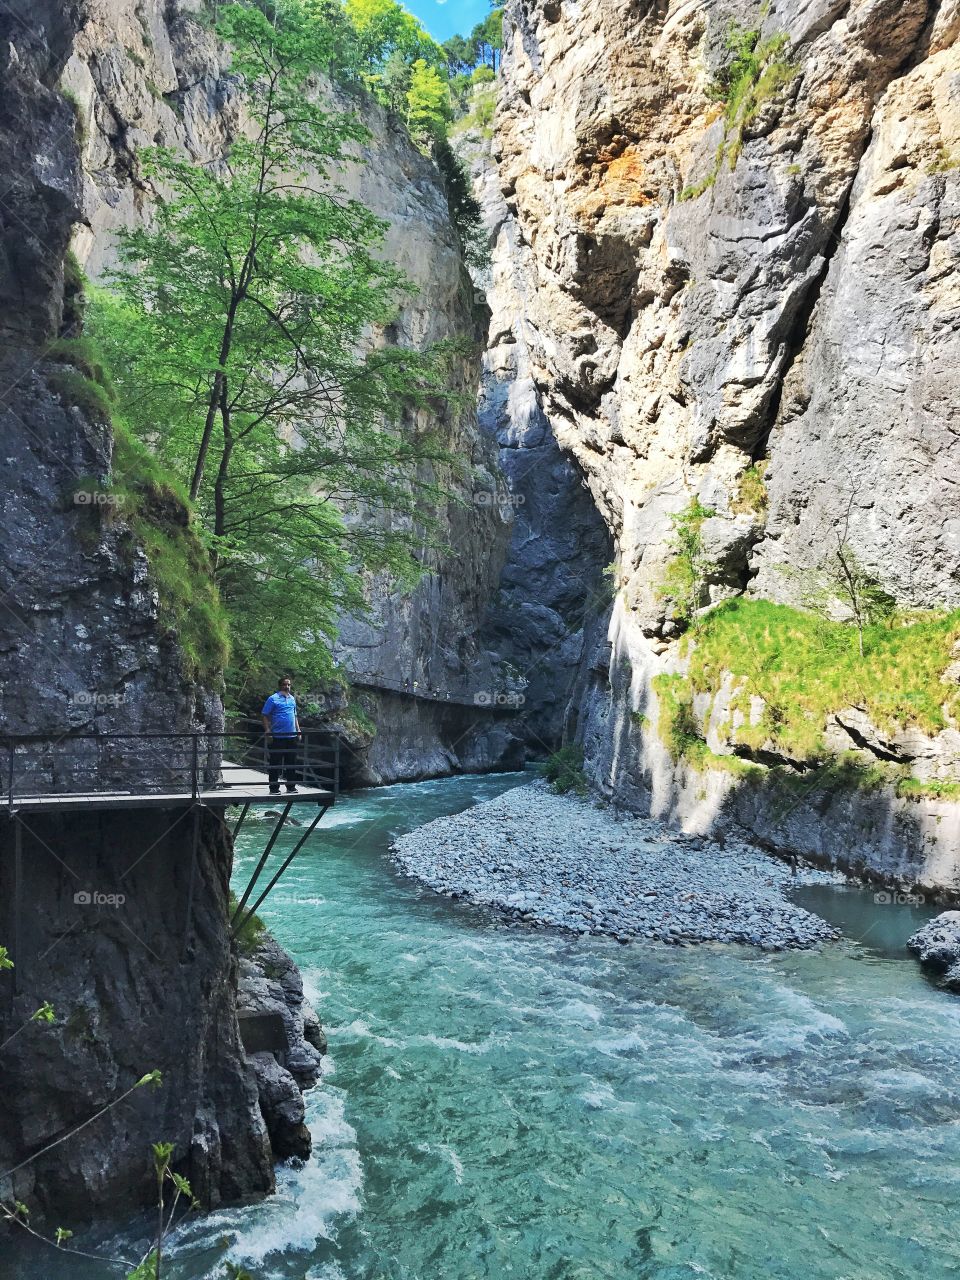 Aare gorge in Switzerland